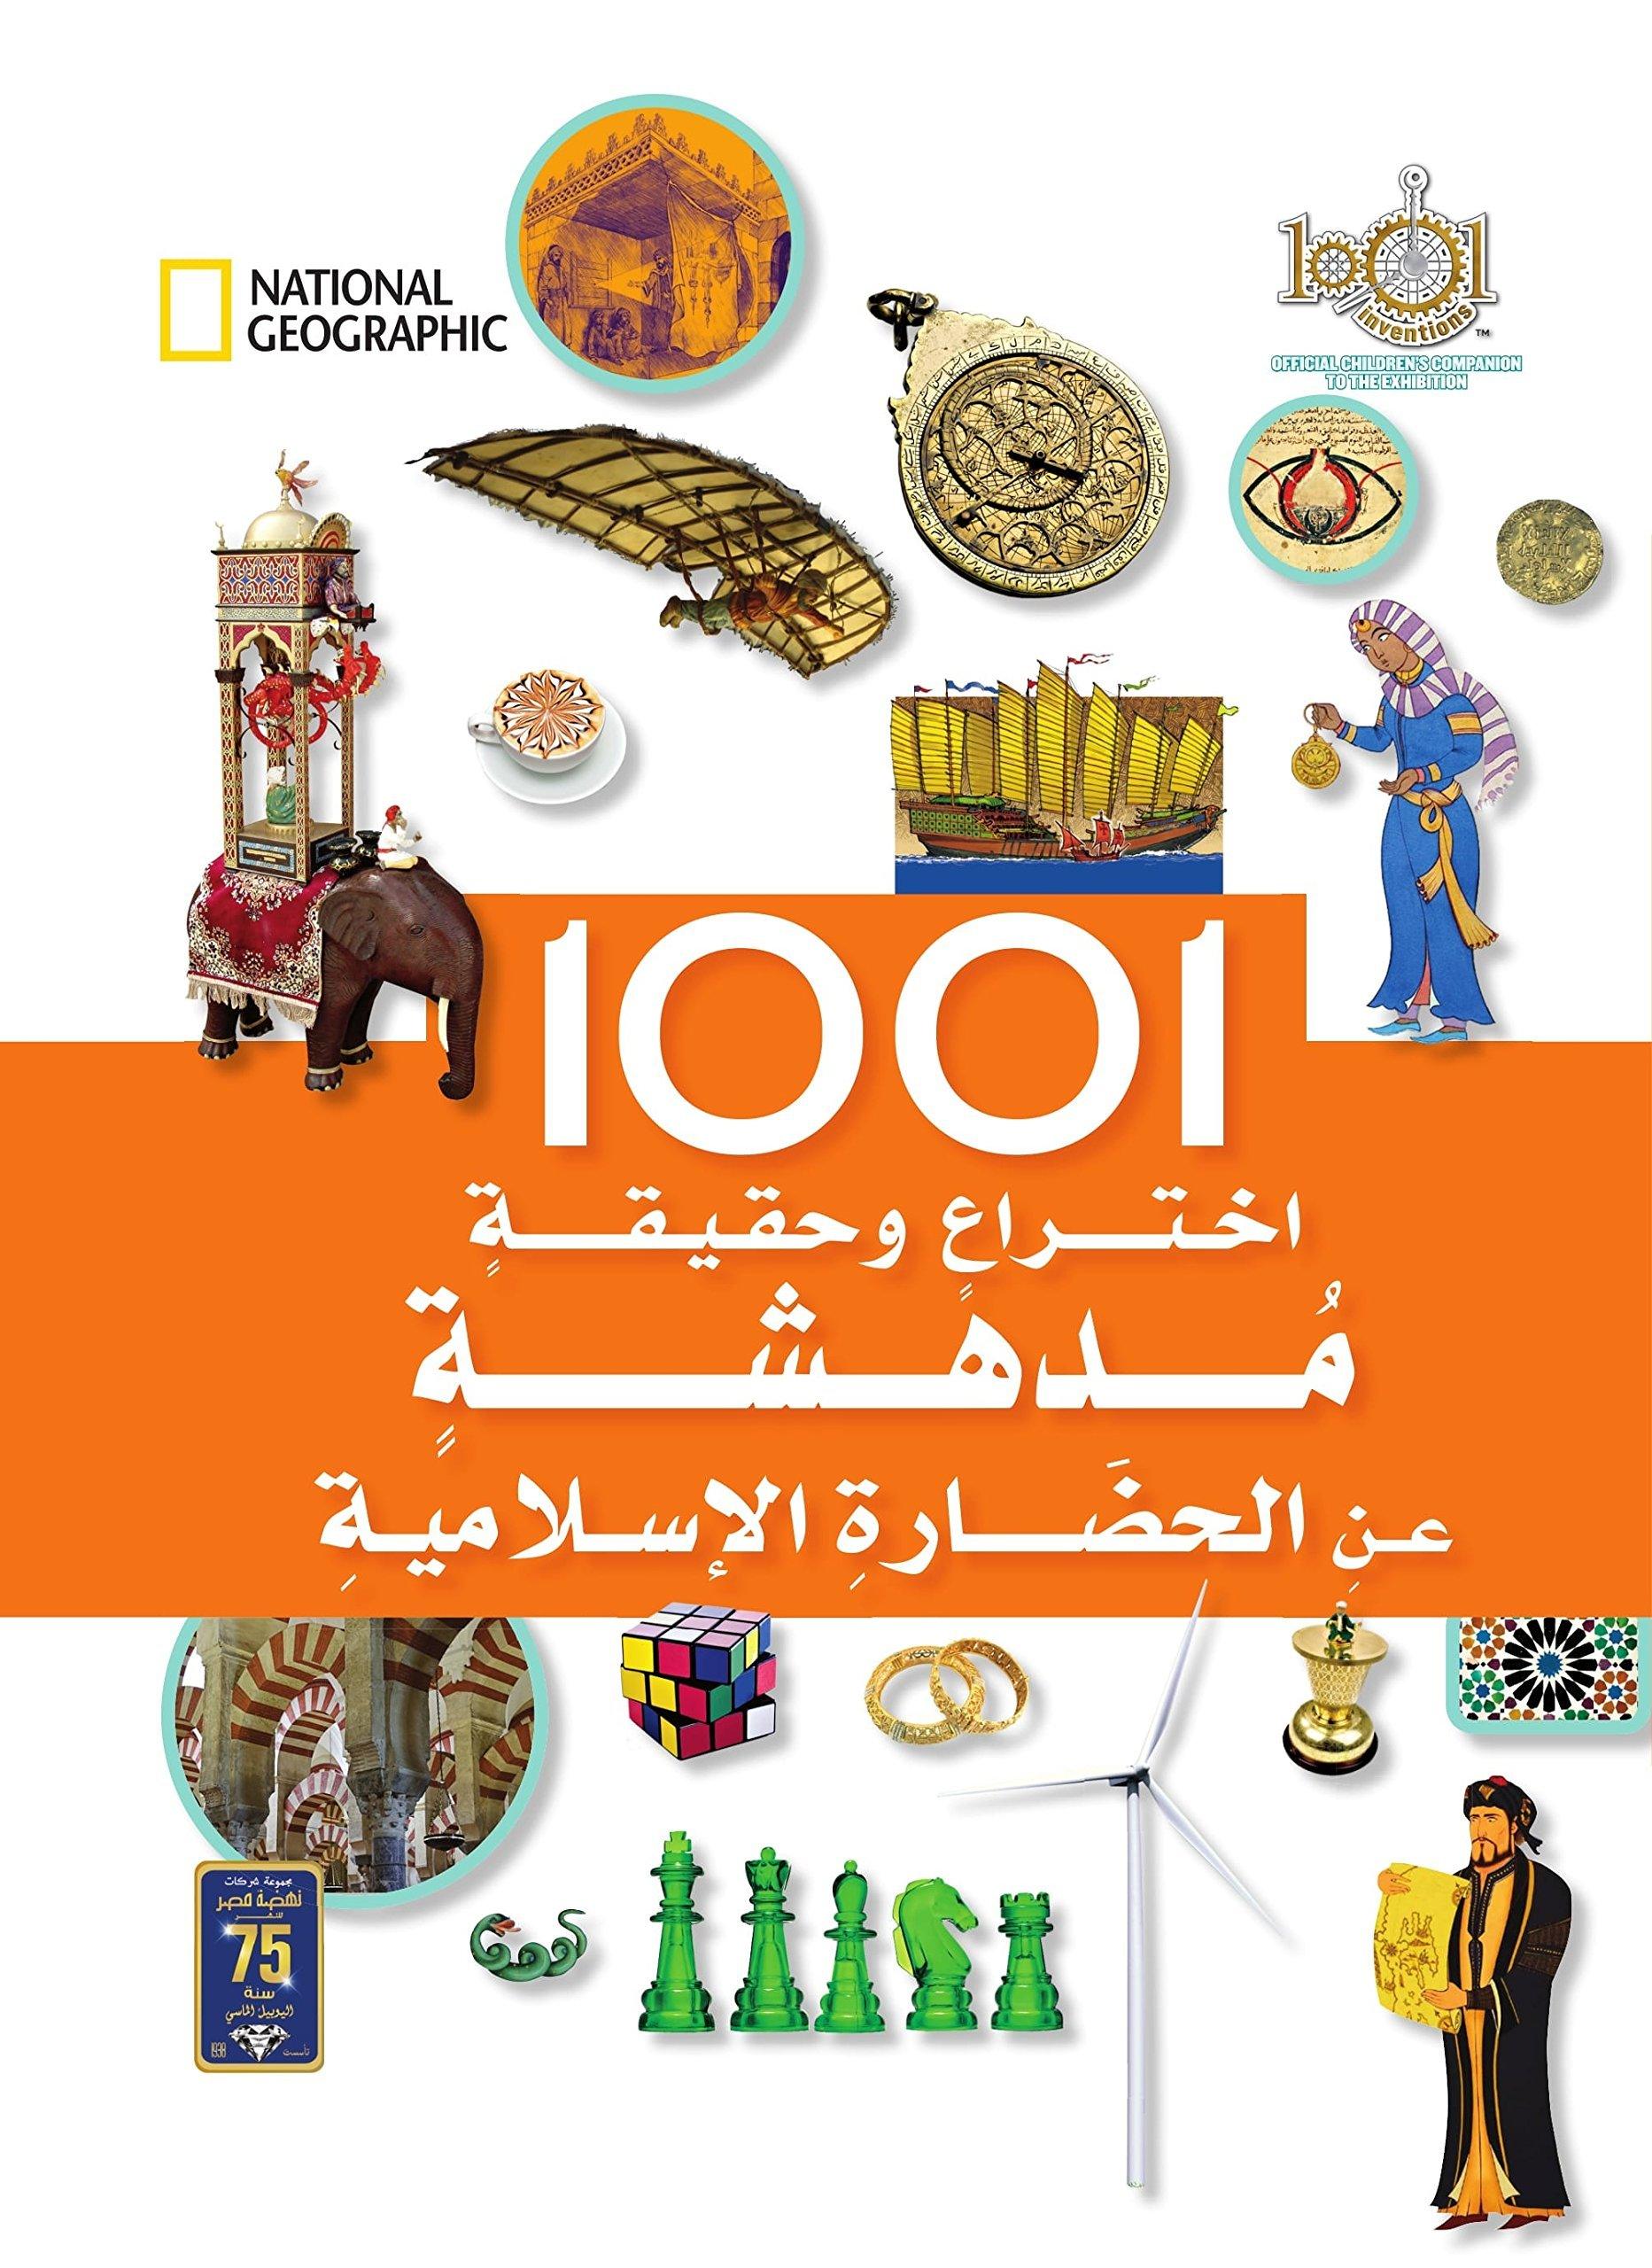 موسوعة 1001 إختراع وحقيقة مدهشة عن الحضارة الإسلامية كتب أطفال ناشيونال جيوغرافيك